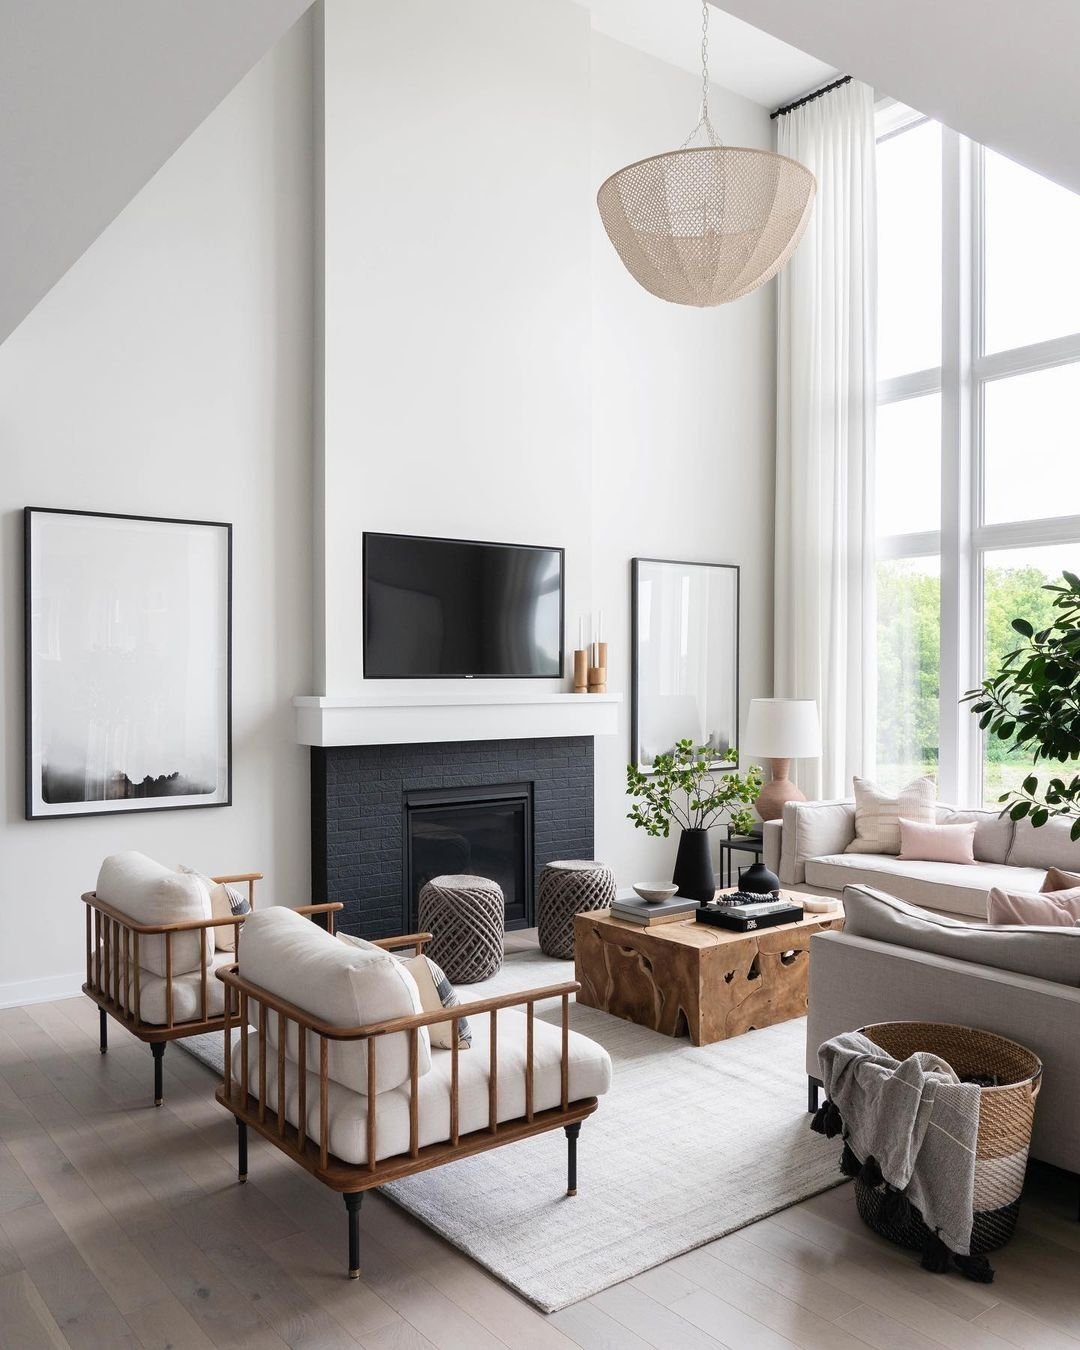 Living room décor ideas to inspire you